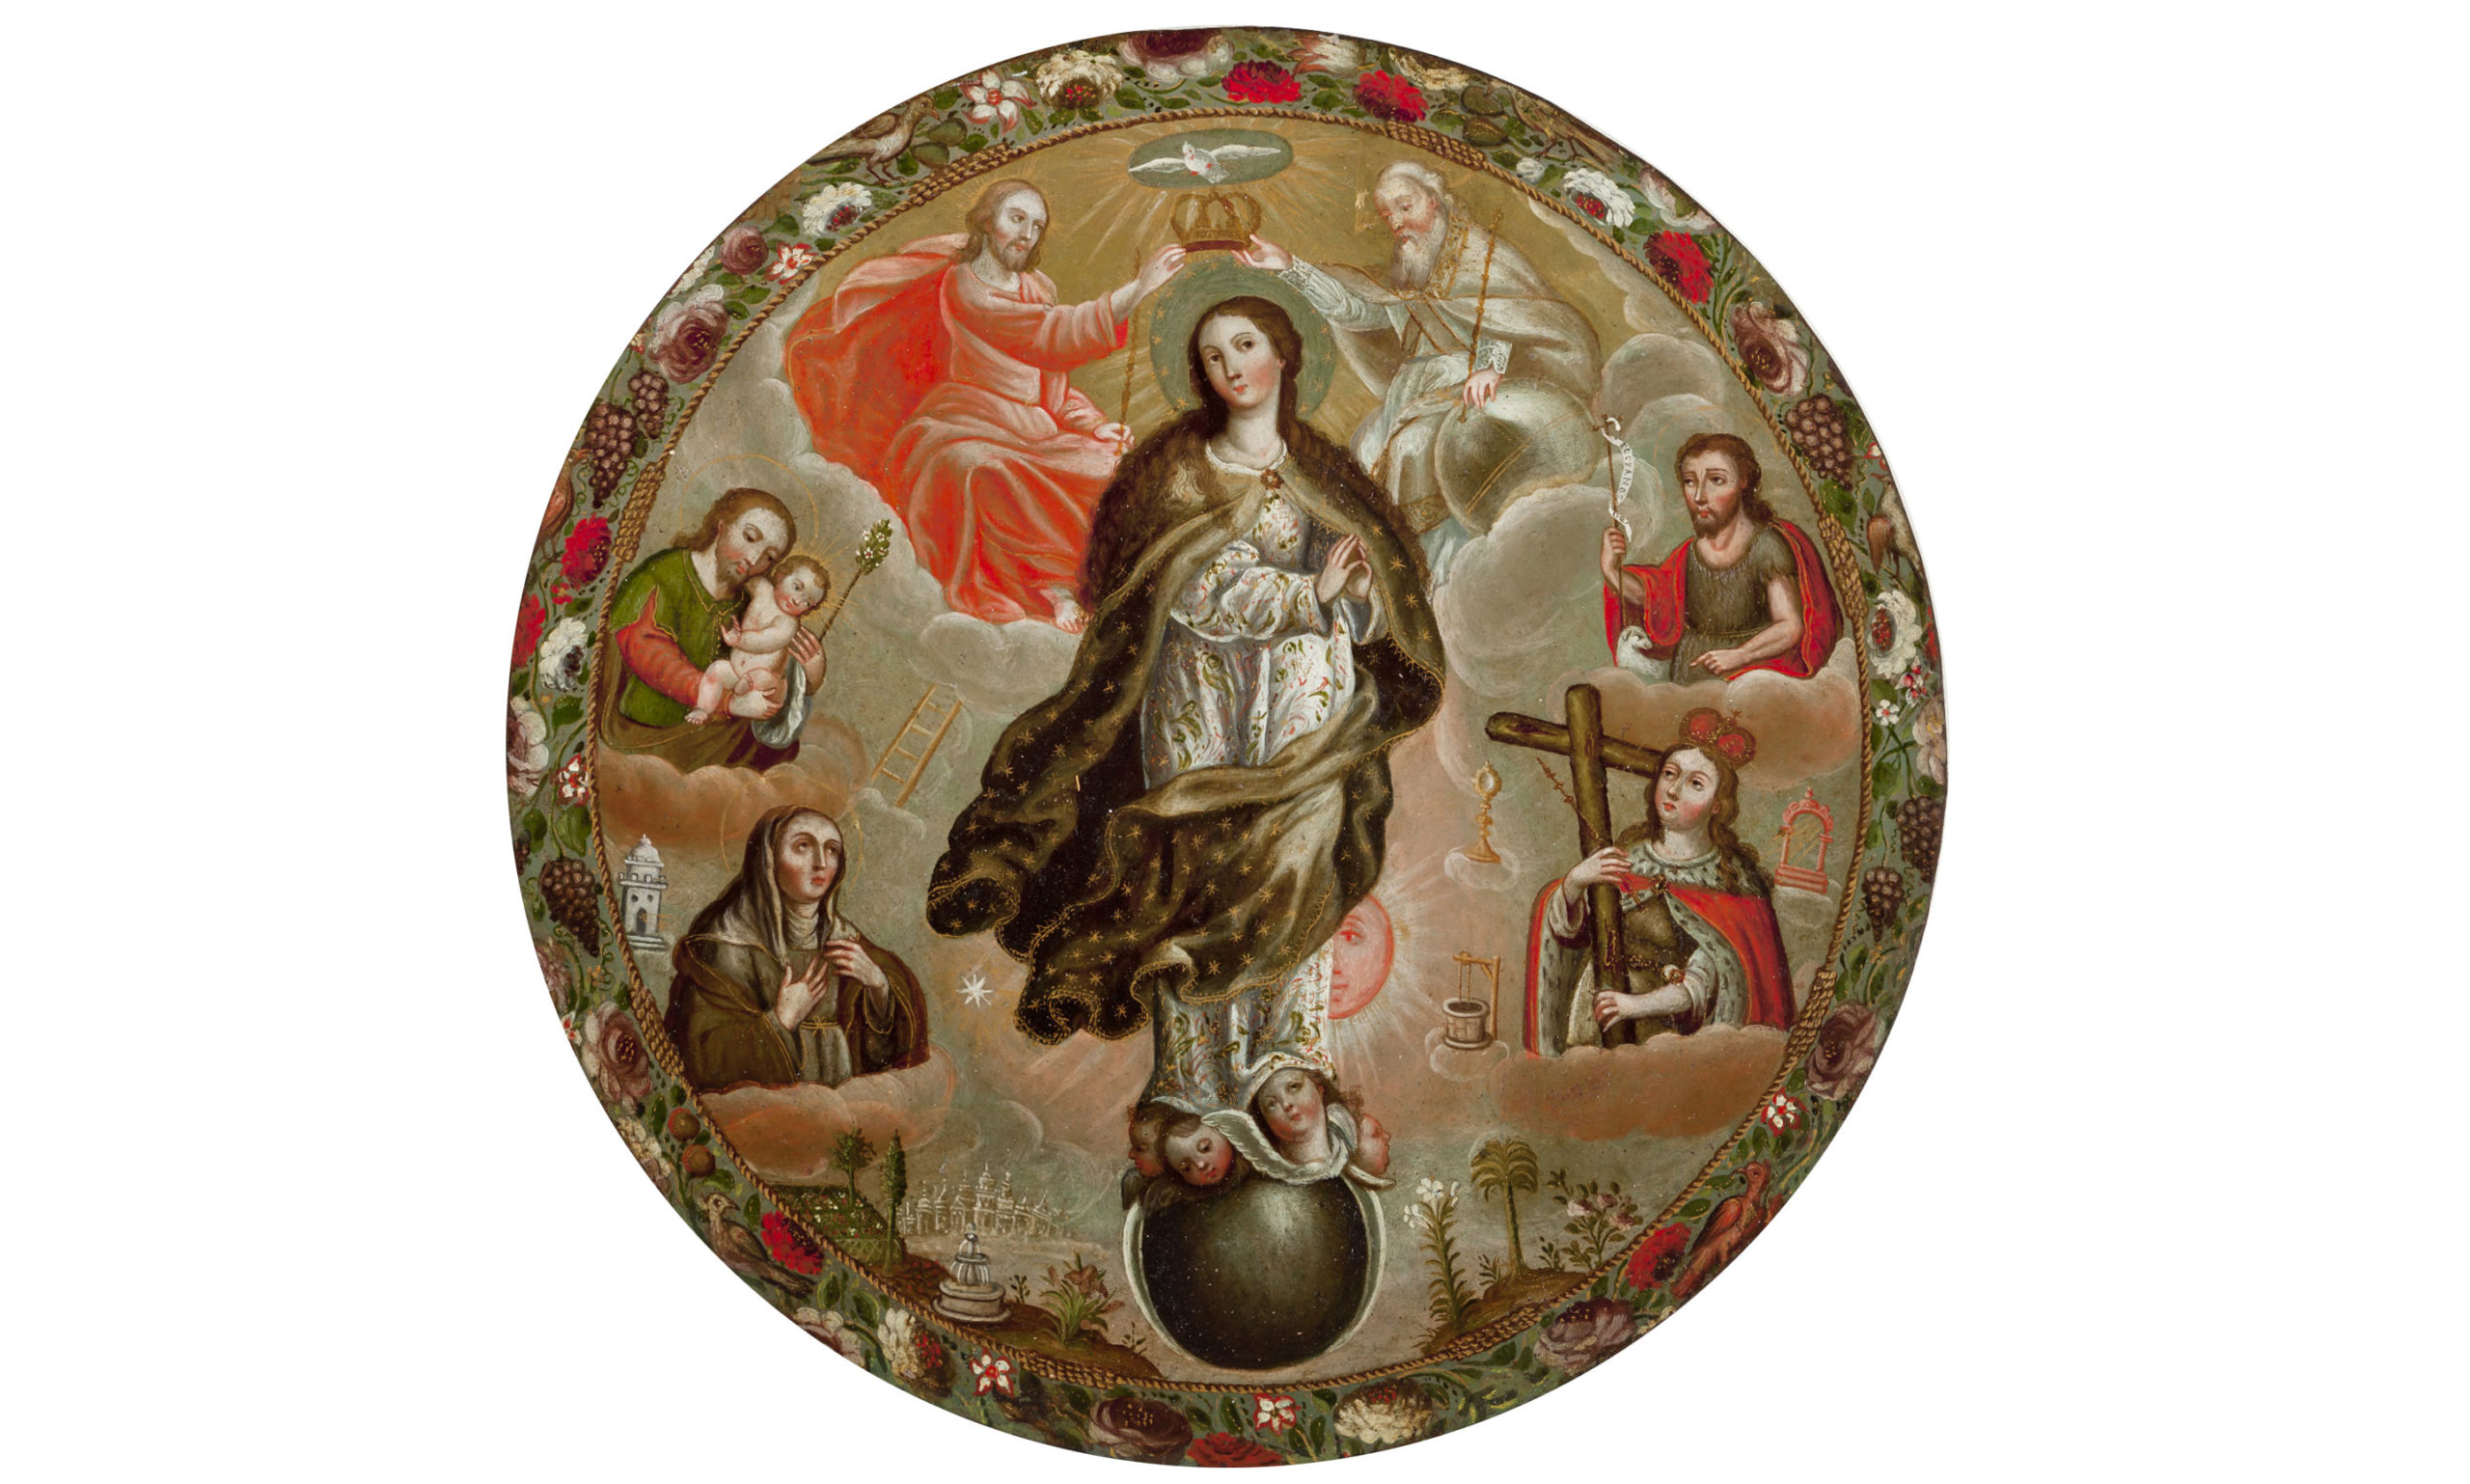 Unknown, Escudo de monja (Nun's Shield), 1690-1710. Oil, gold and copper. Gift of Friends of Mexican Art.